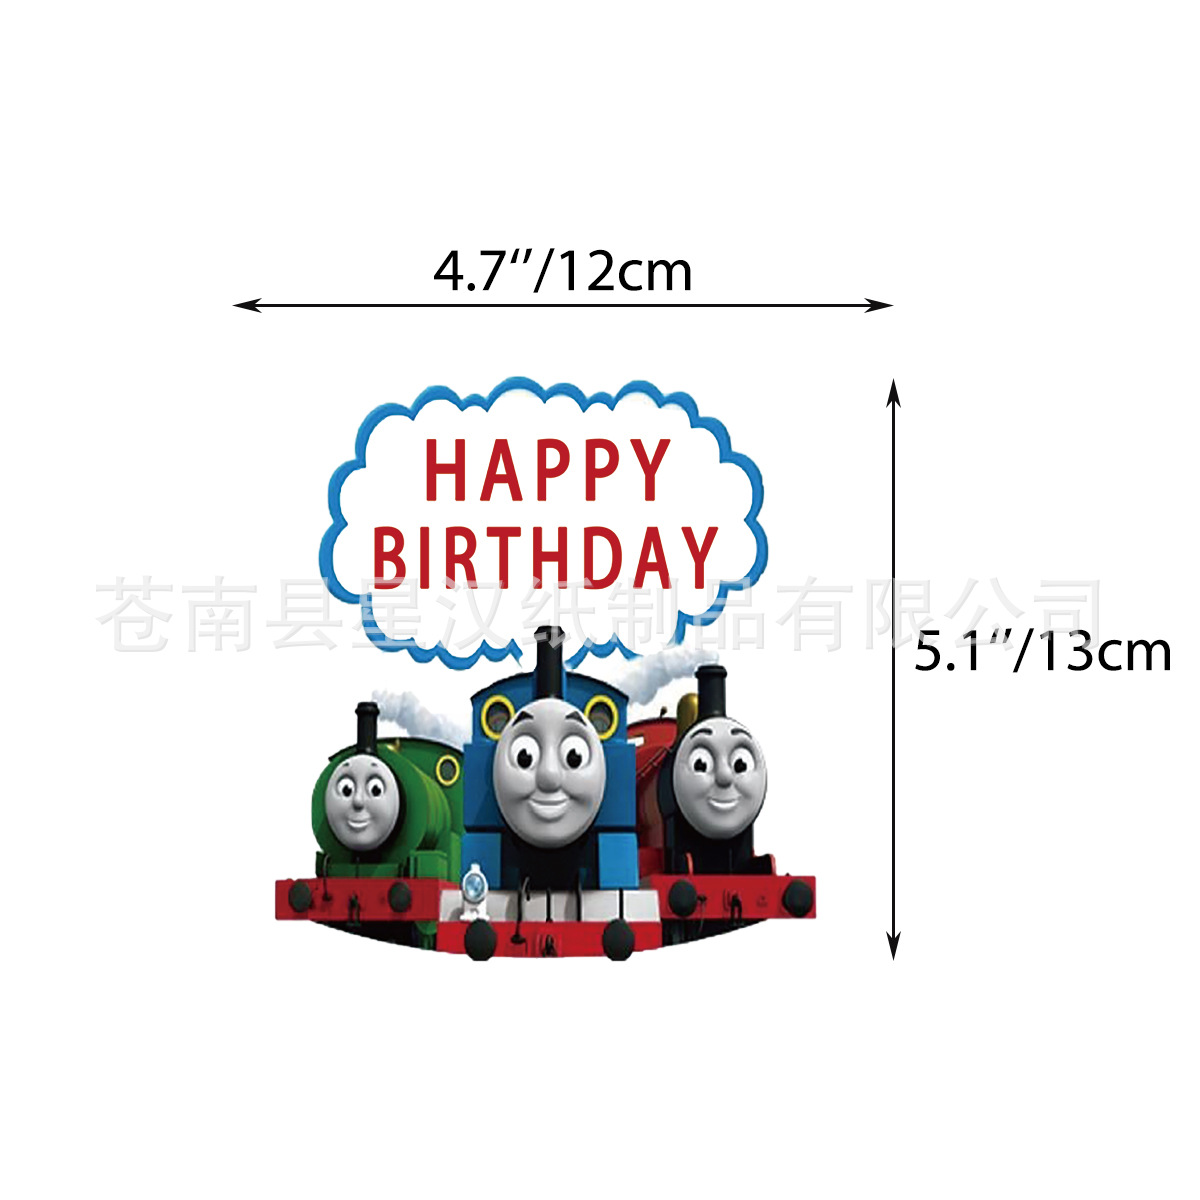 托马斯蛋糕,托马斯小火车生日蛋糕 - 伤感说说吧